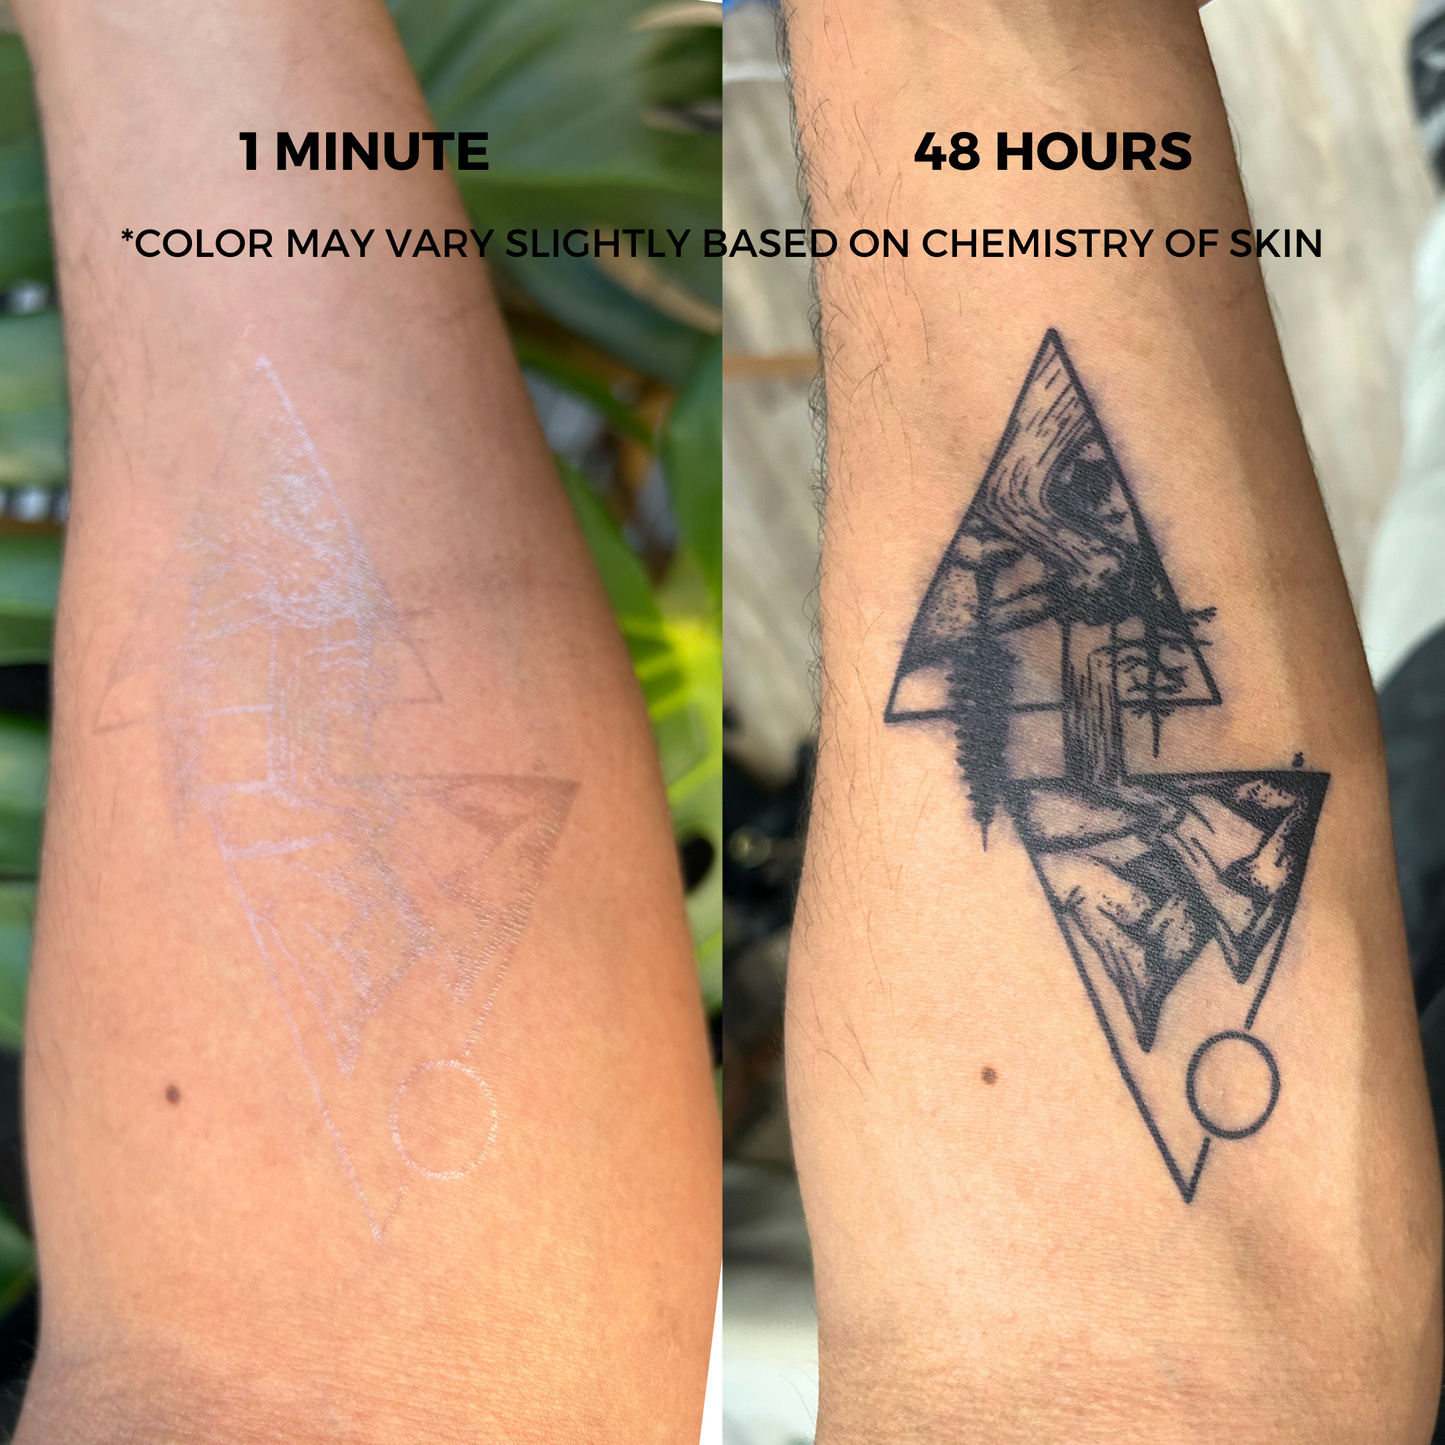 Koi Fish Tattoo | 2 Week Temporary Tattoo | Plant Based Vegan Tattoo | Fish Tattoo | Cute Tattoo | Festival Tattoo | Matching Tattoo | Gift Idea | Temporary Tattoo | Meaningful Tattoo | Inspirational Tattoo